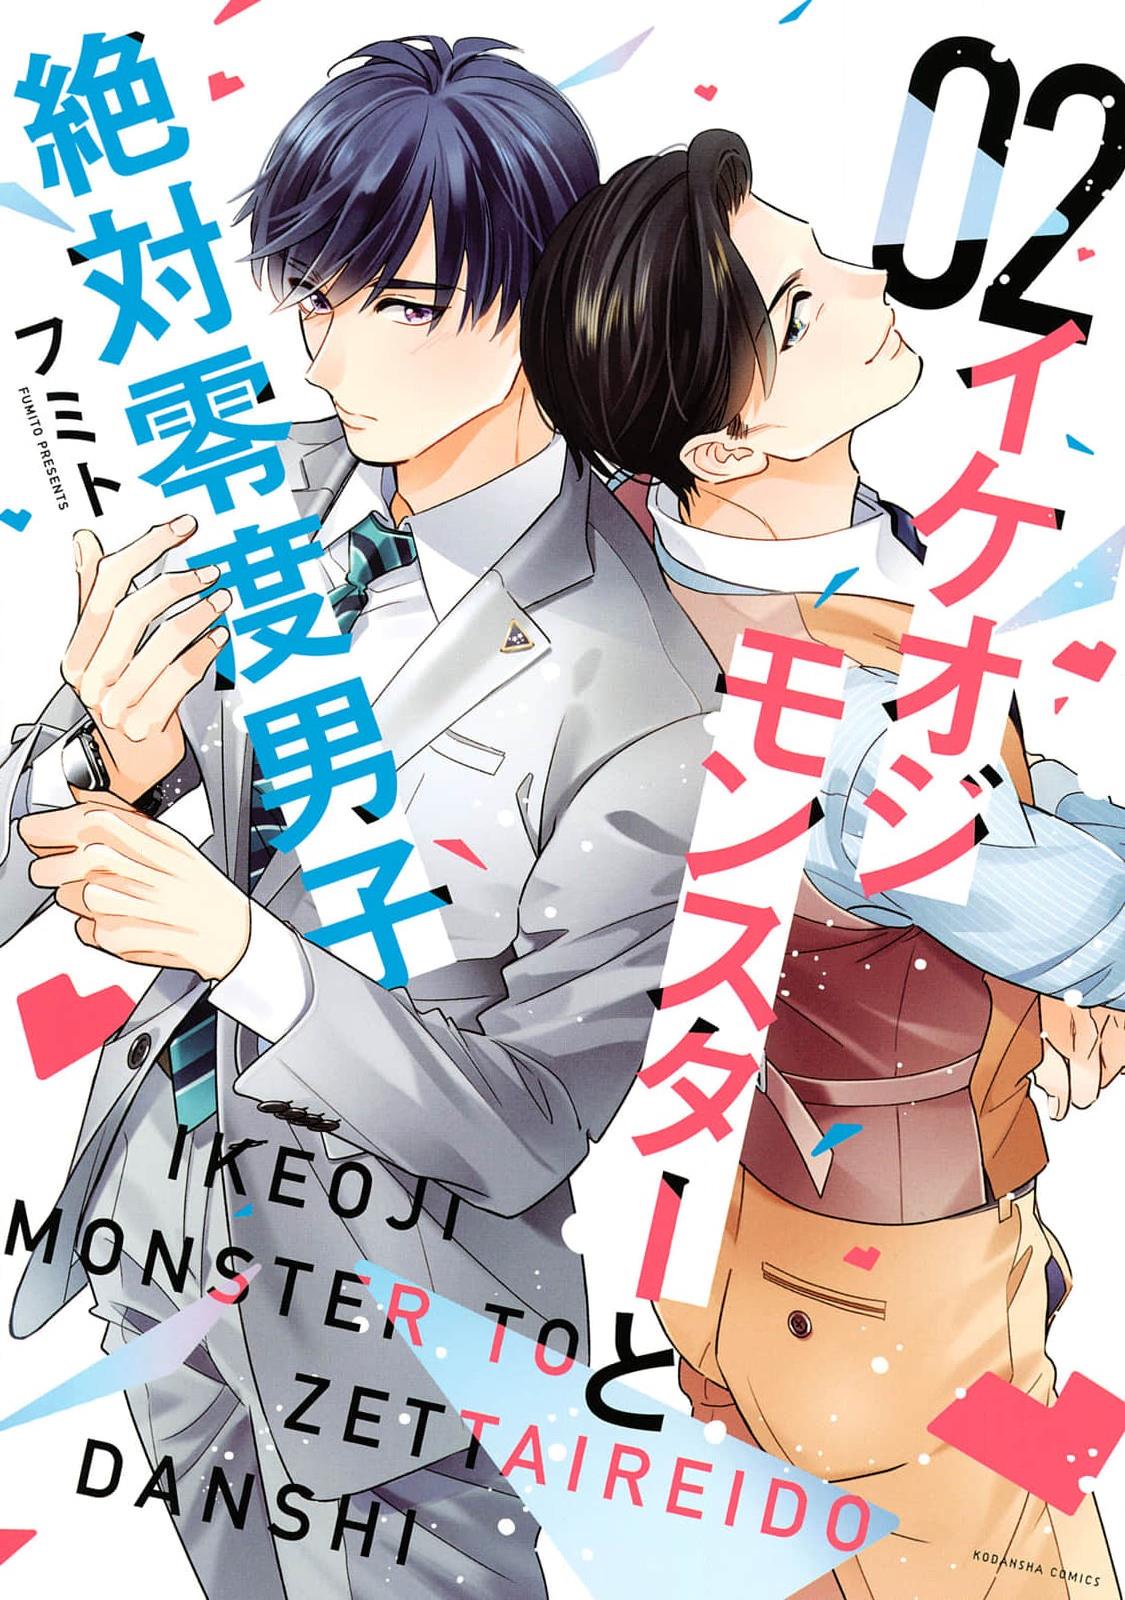 Ikeoji Monster To Zettai Reido Danshi Vol.2 Chapter 8 - Picture 1